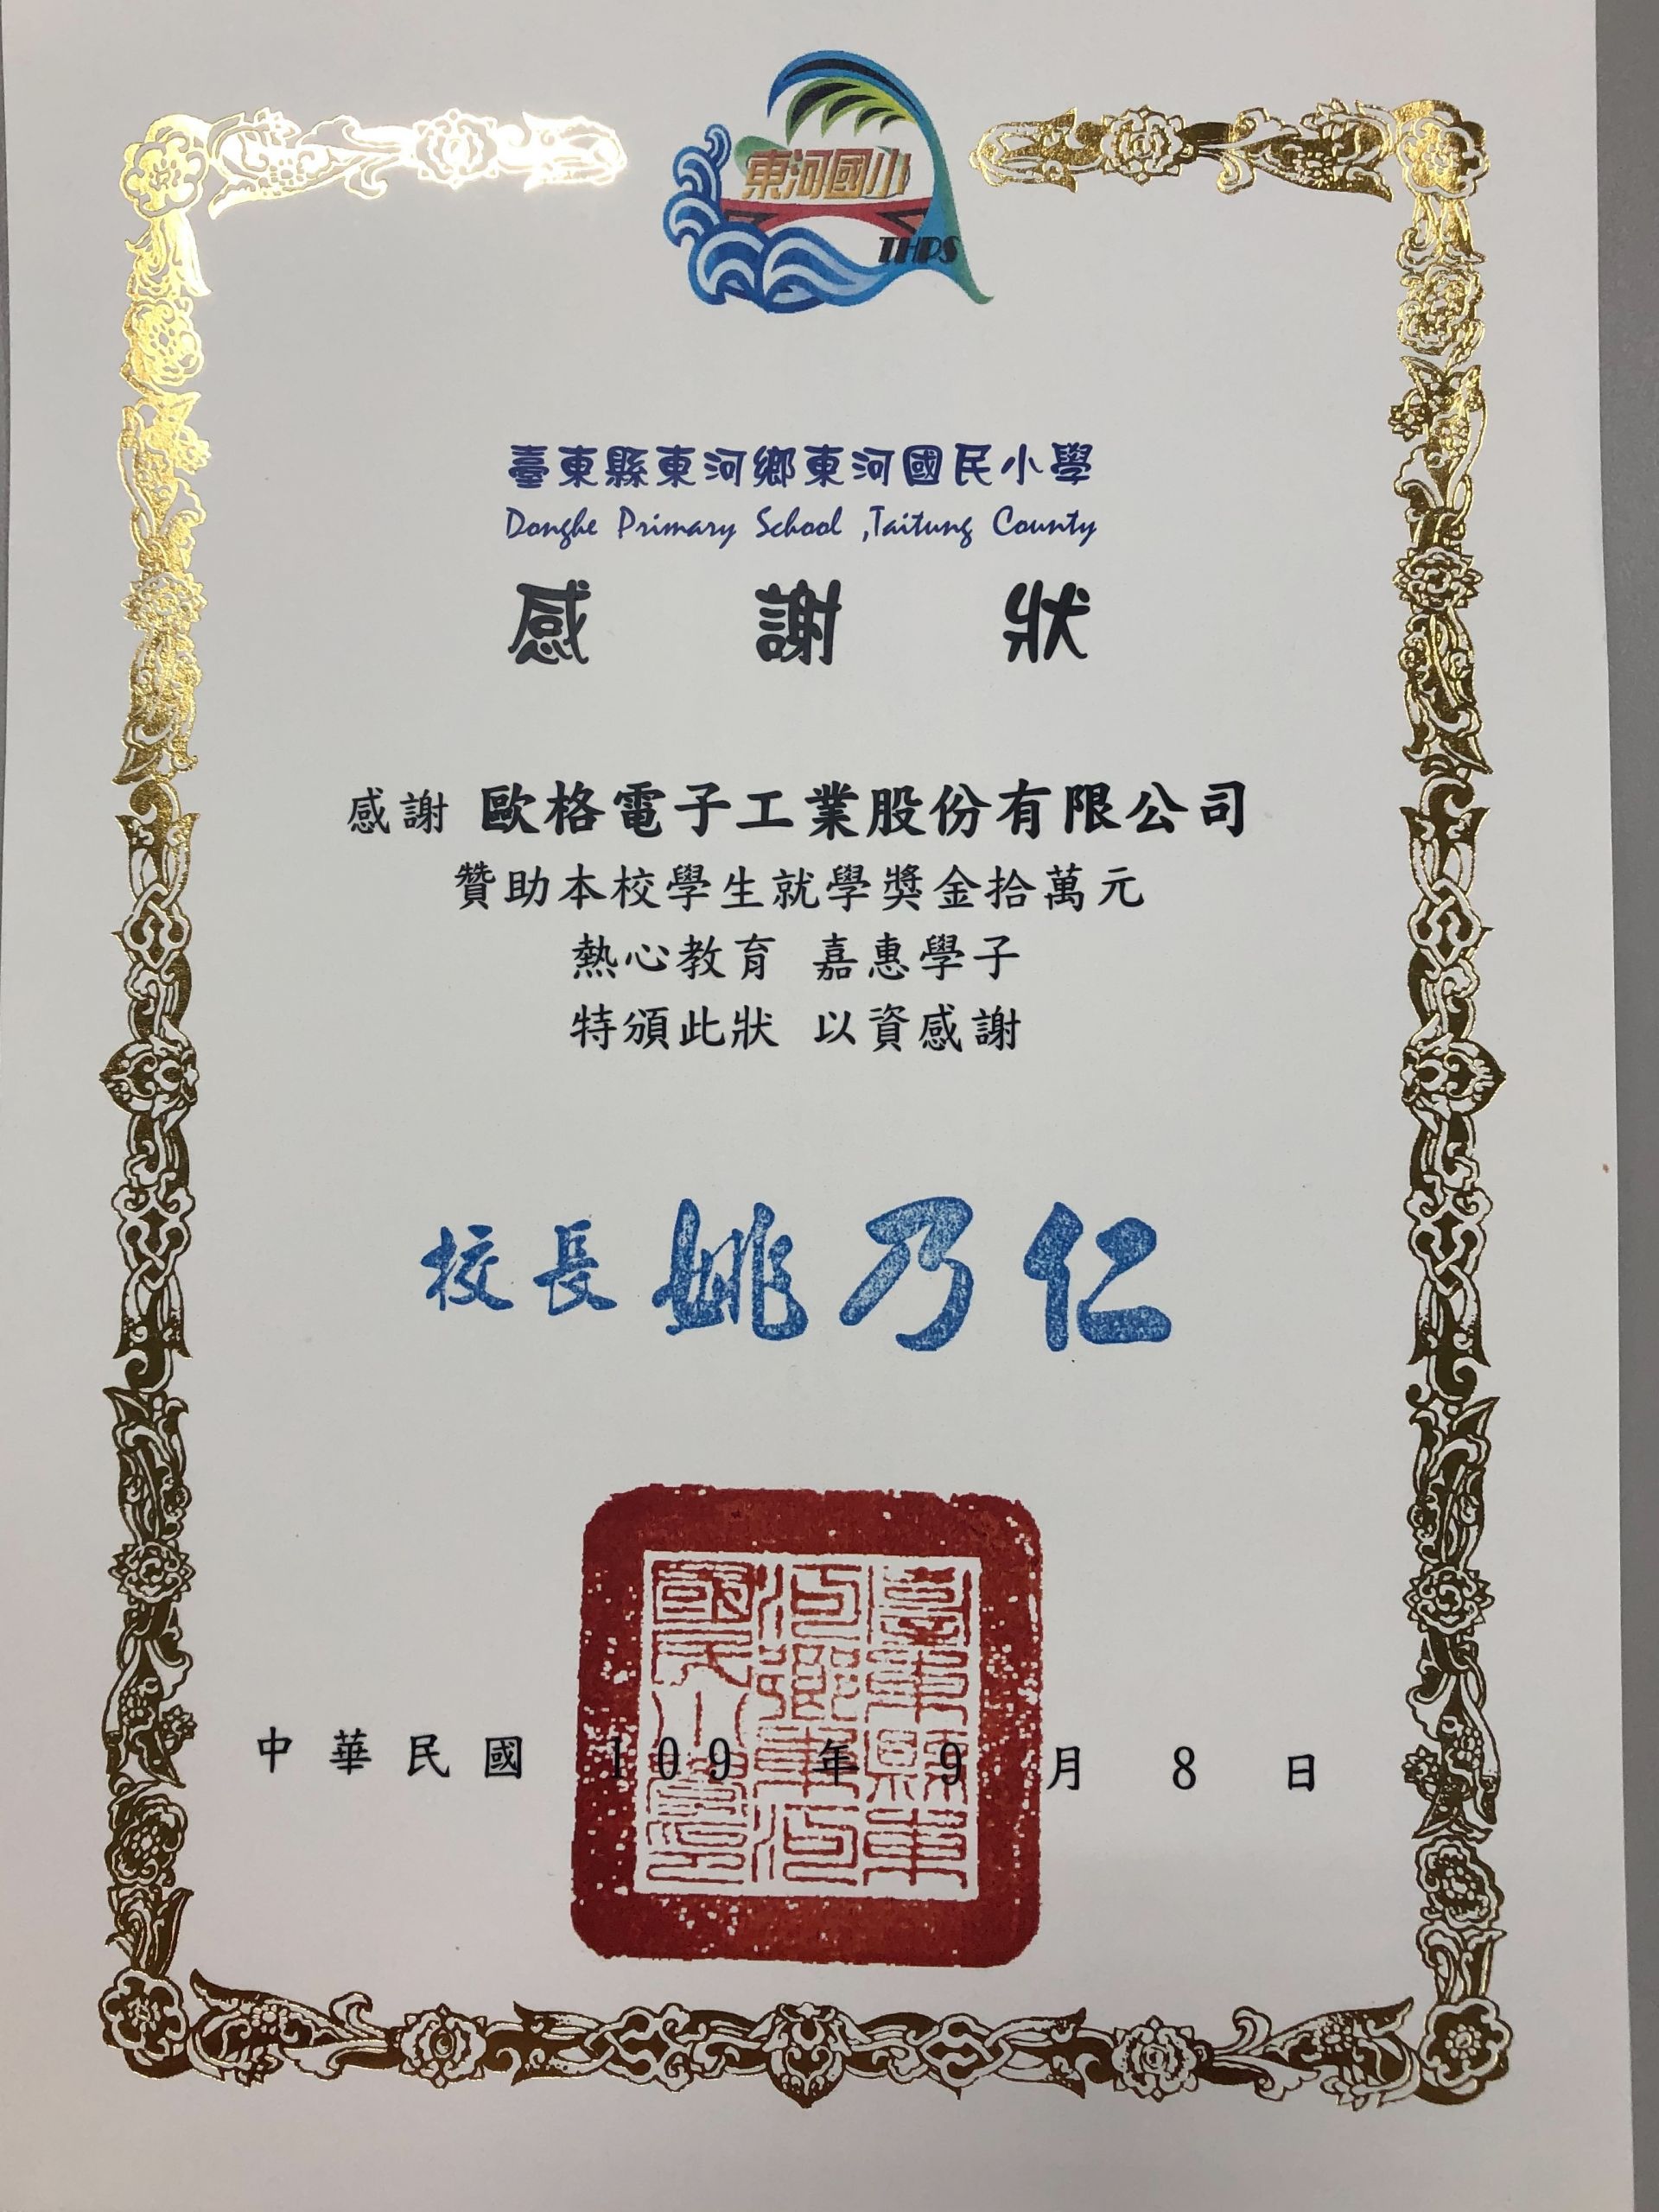 AHOKU ha ricevuto il Certificato di Apprezzamento per la Borsa di Studio 2020 dalla Scuola Primaria Donghe